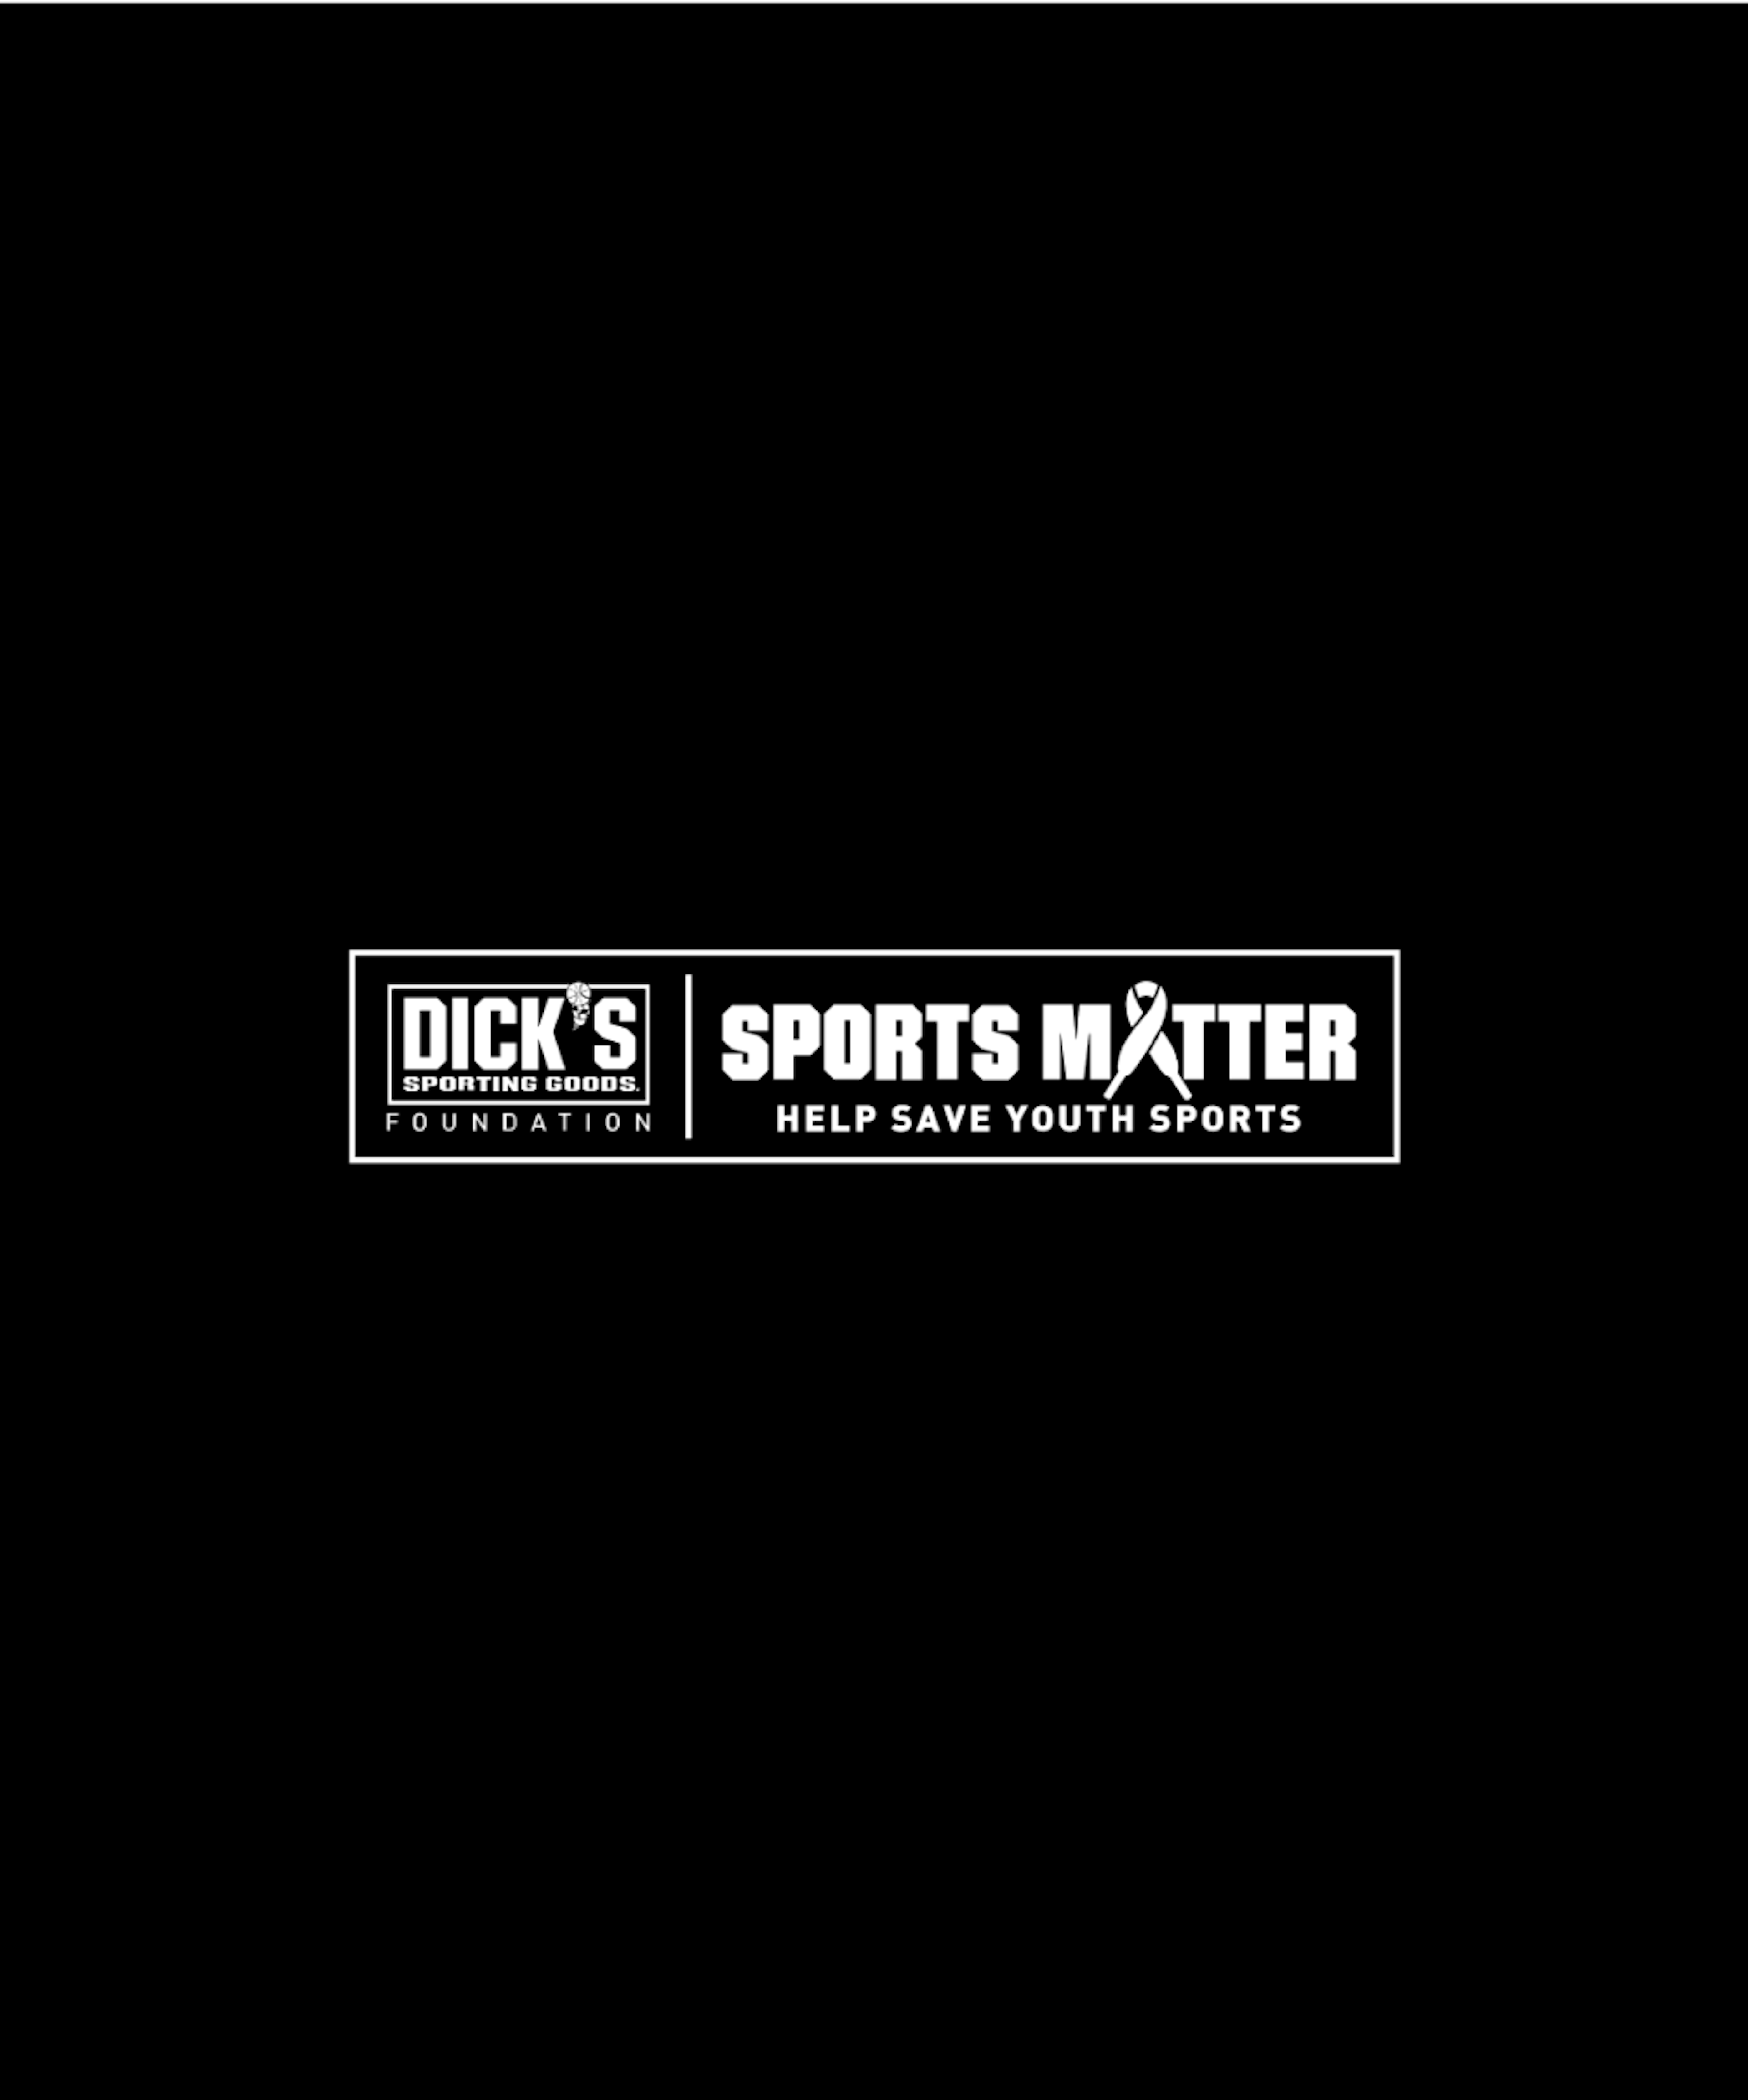 Dicks sports matter